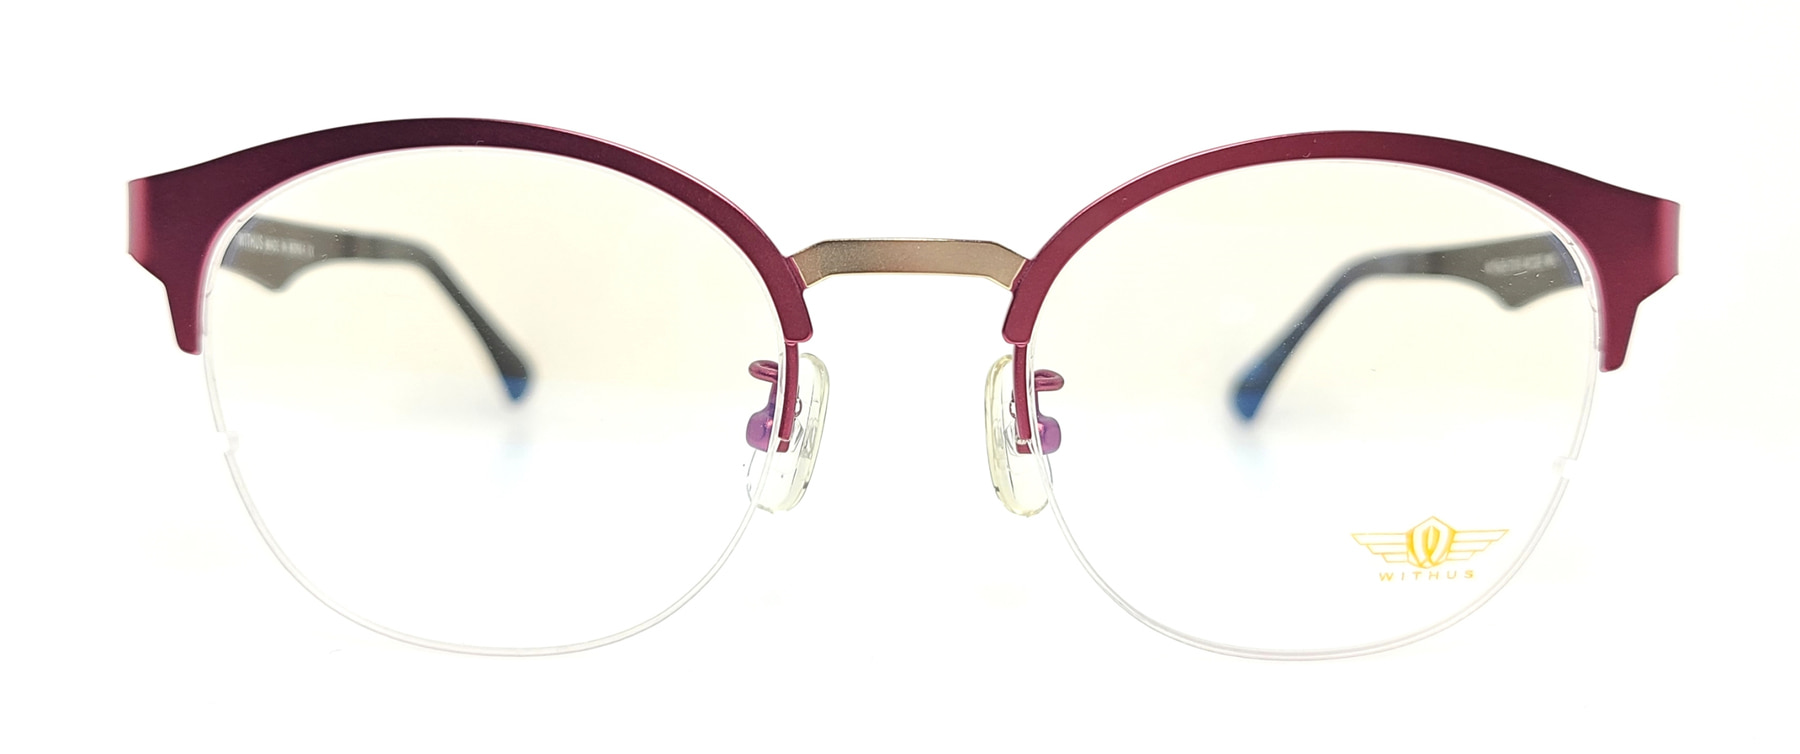 WITHUS-7310, Korean glasses, sunglasses, eyeglasses, glasses